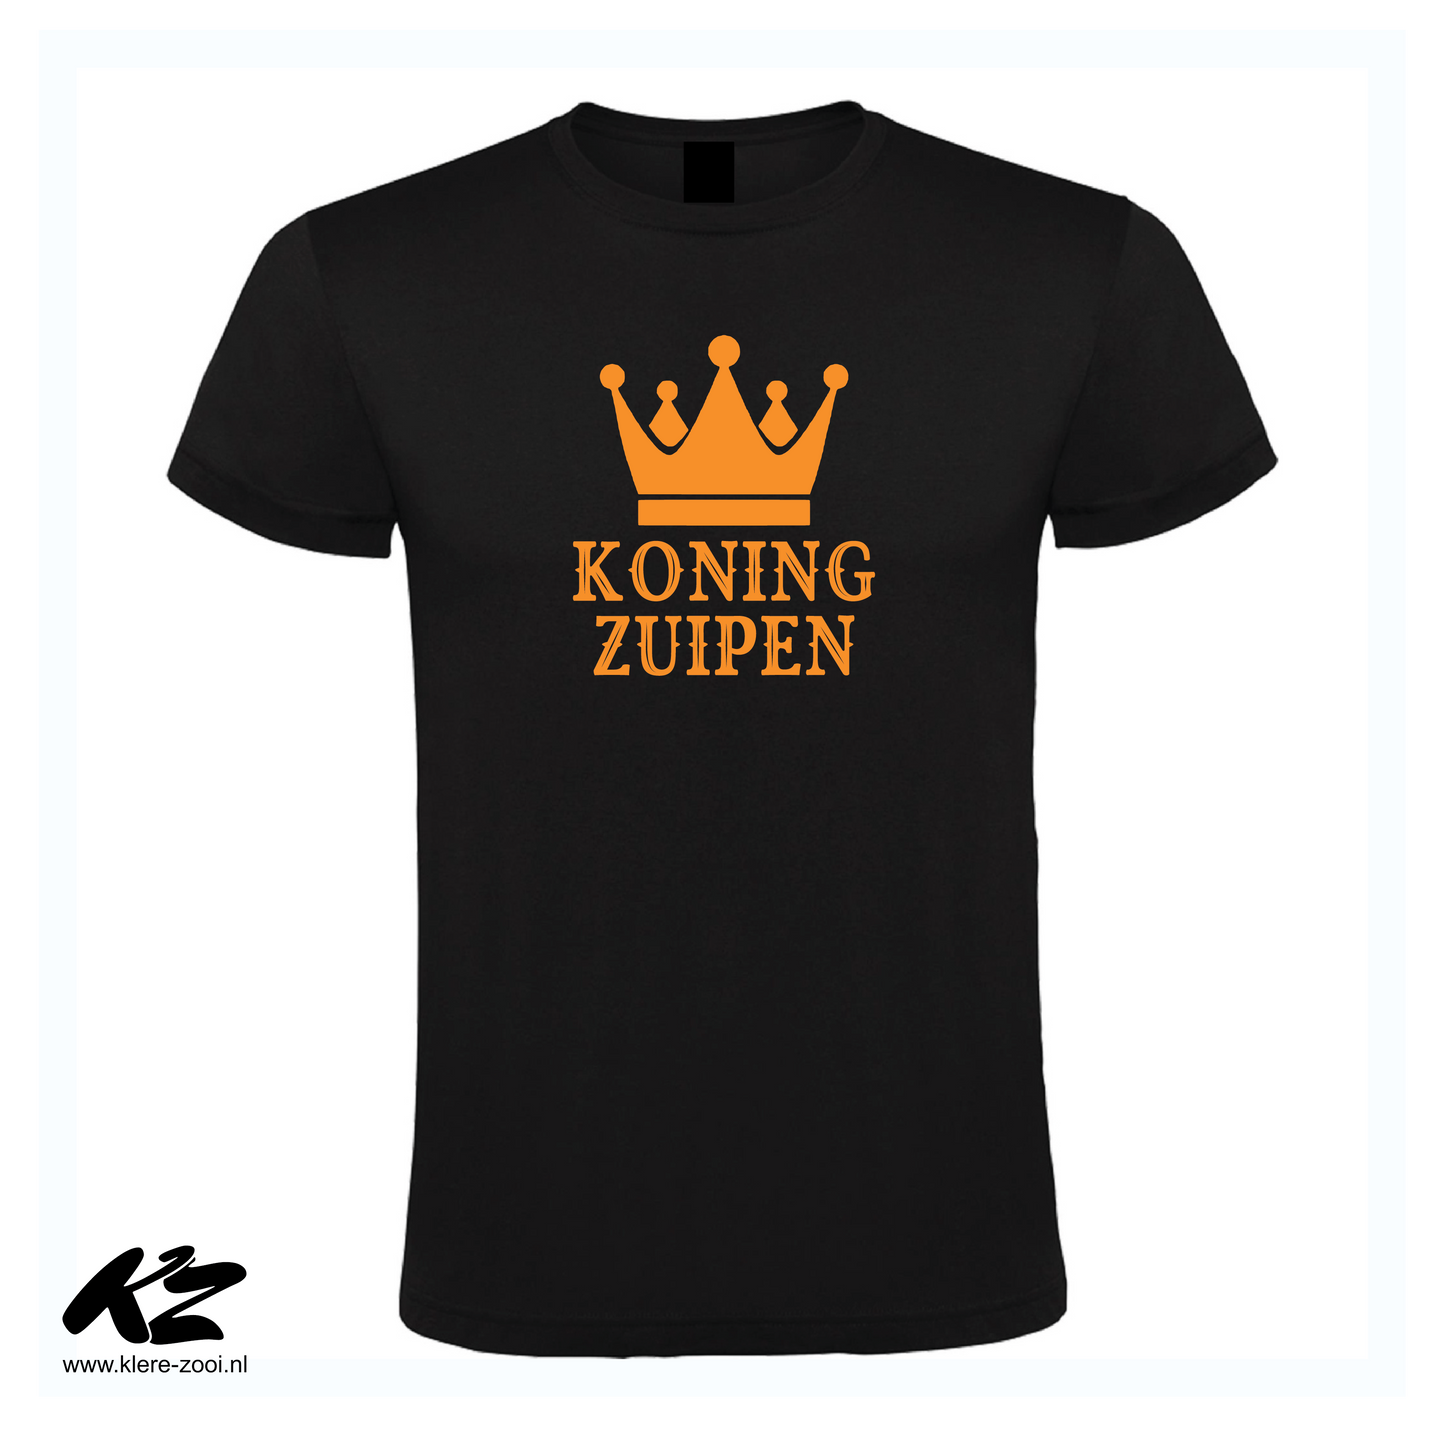 Koning Zuipen